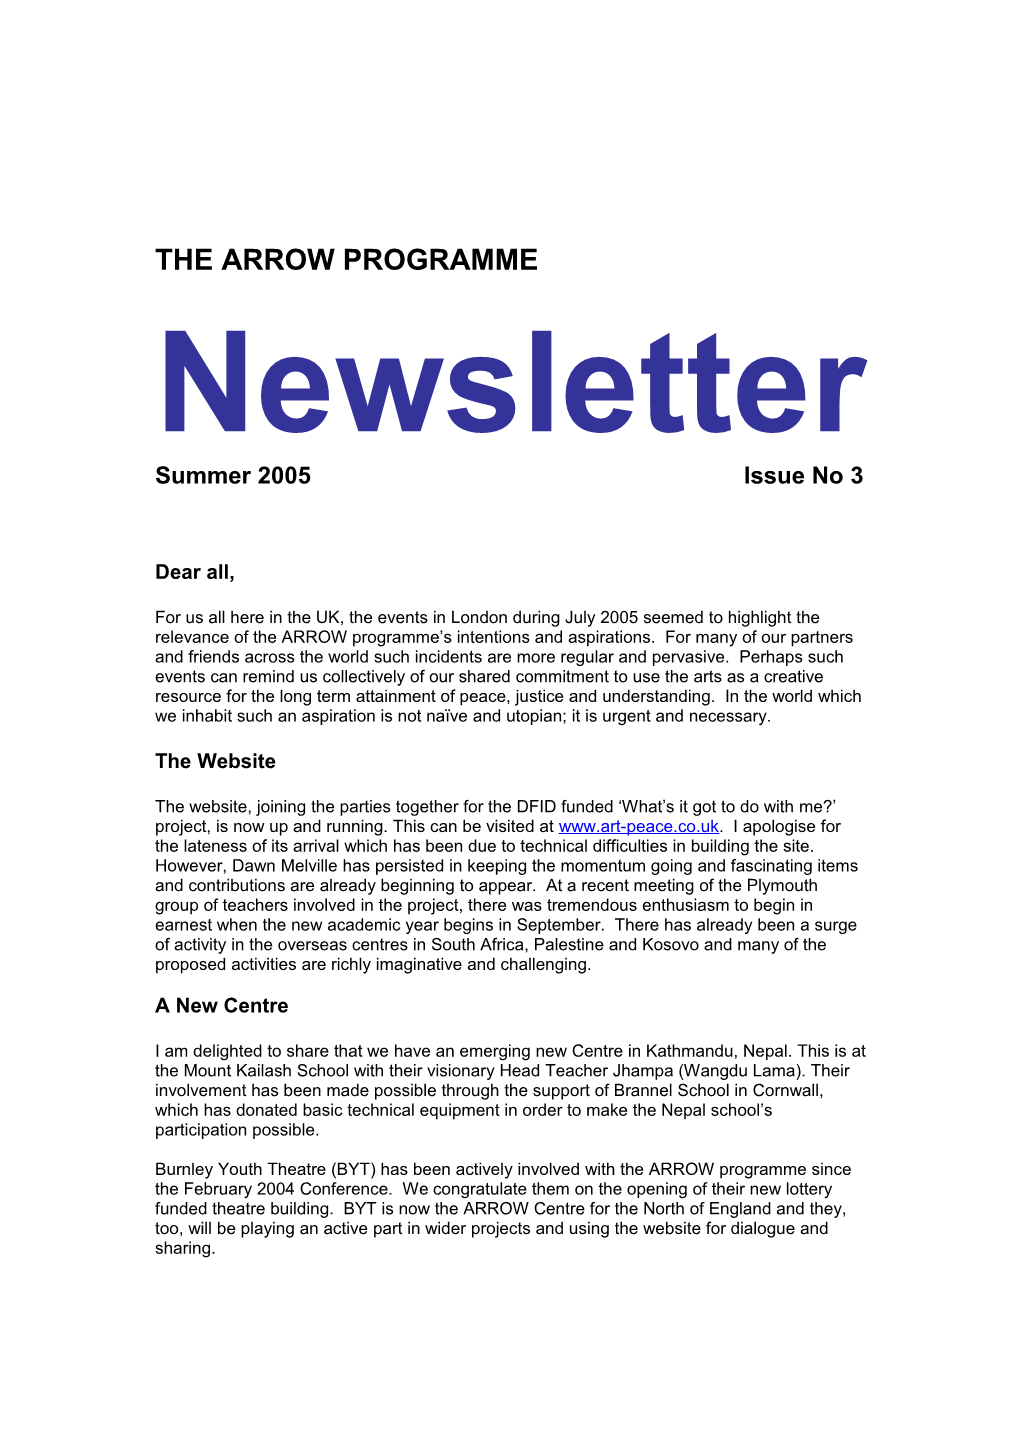 The Arrow Programme